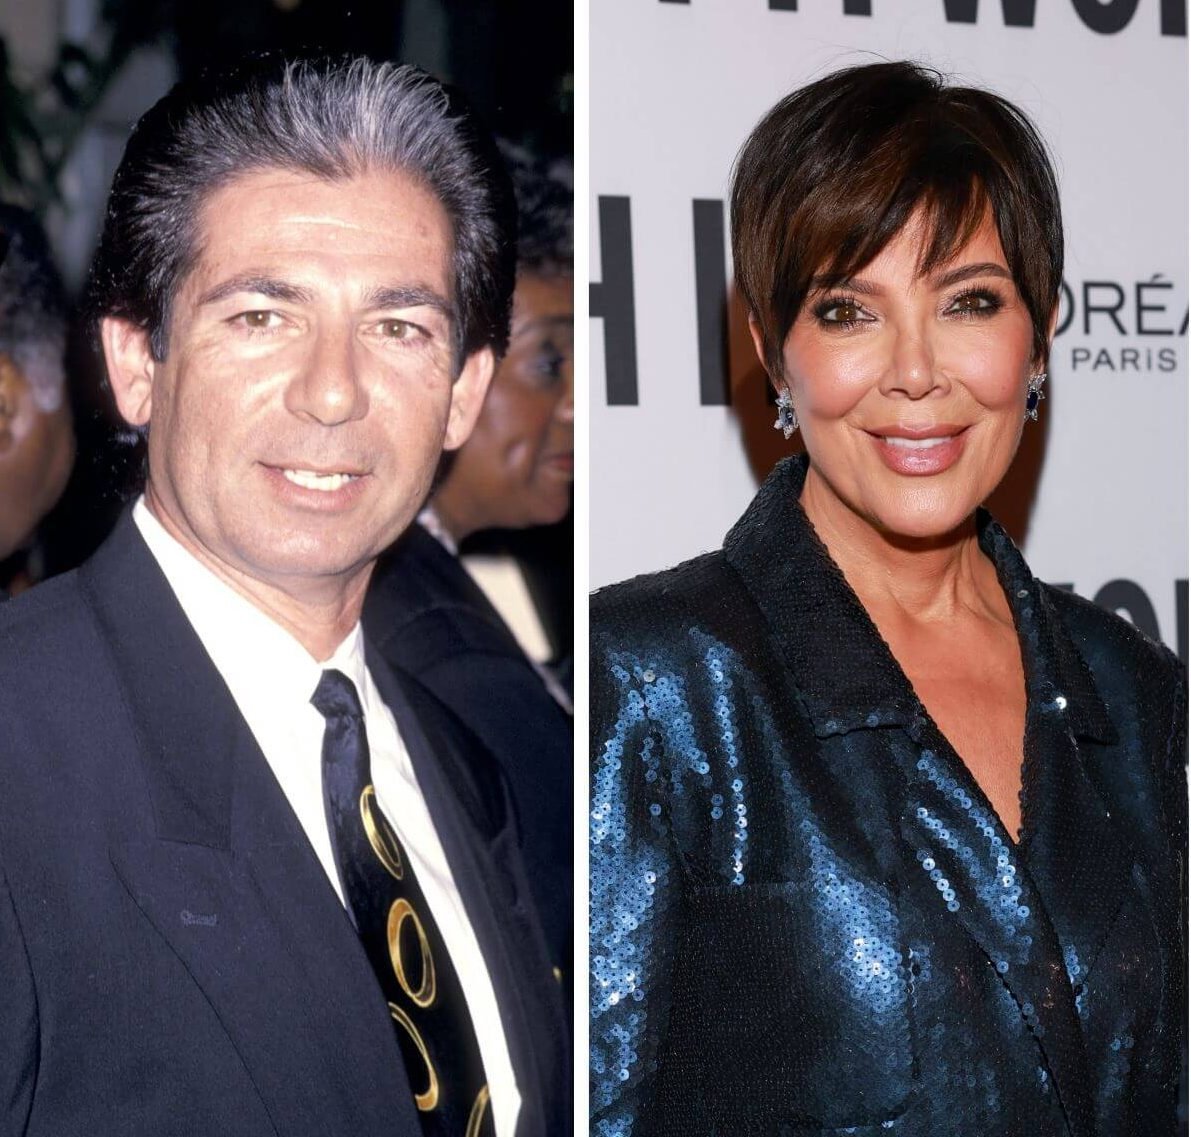 (L): Robert Kardashian Sr., who divorced Kris Jenner in 1991, (R): Kris Jenner